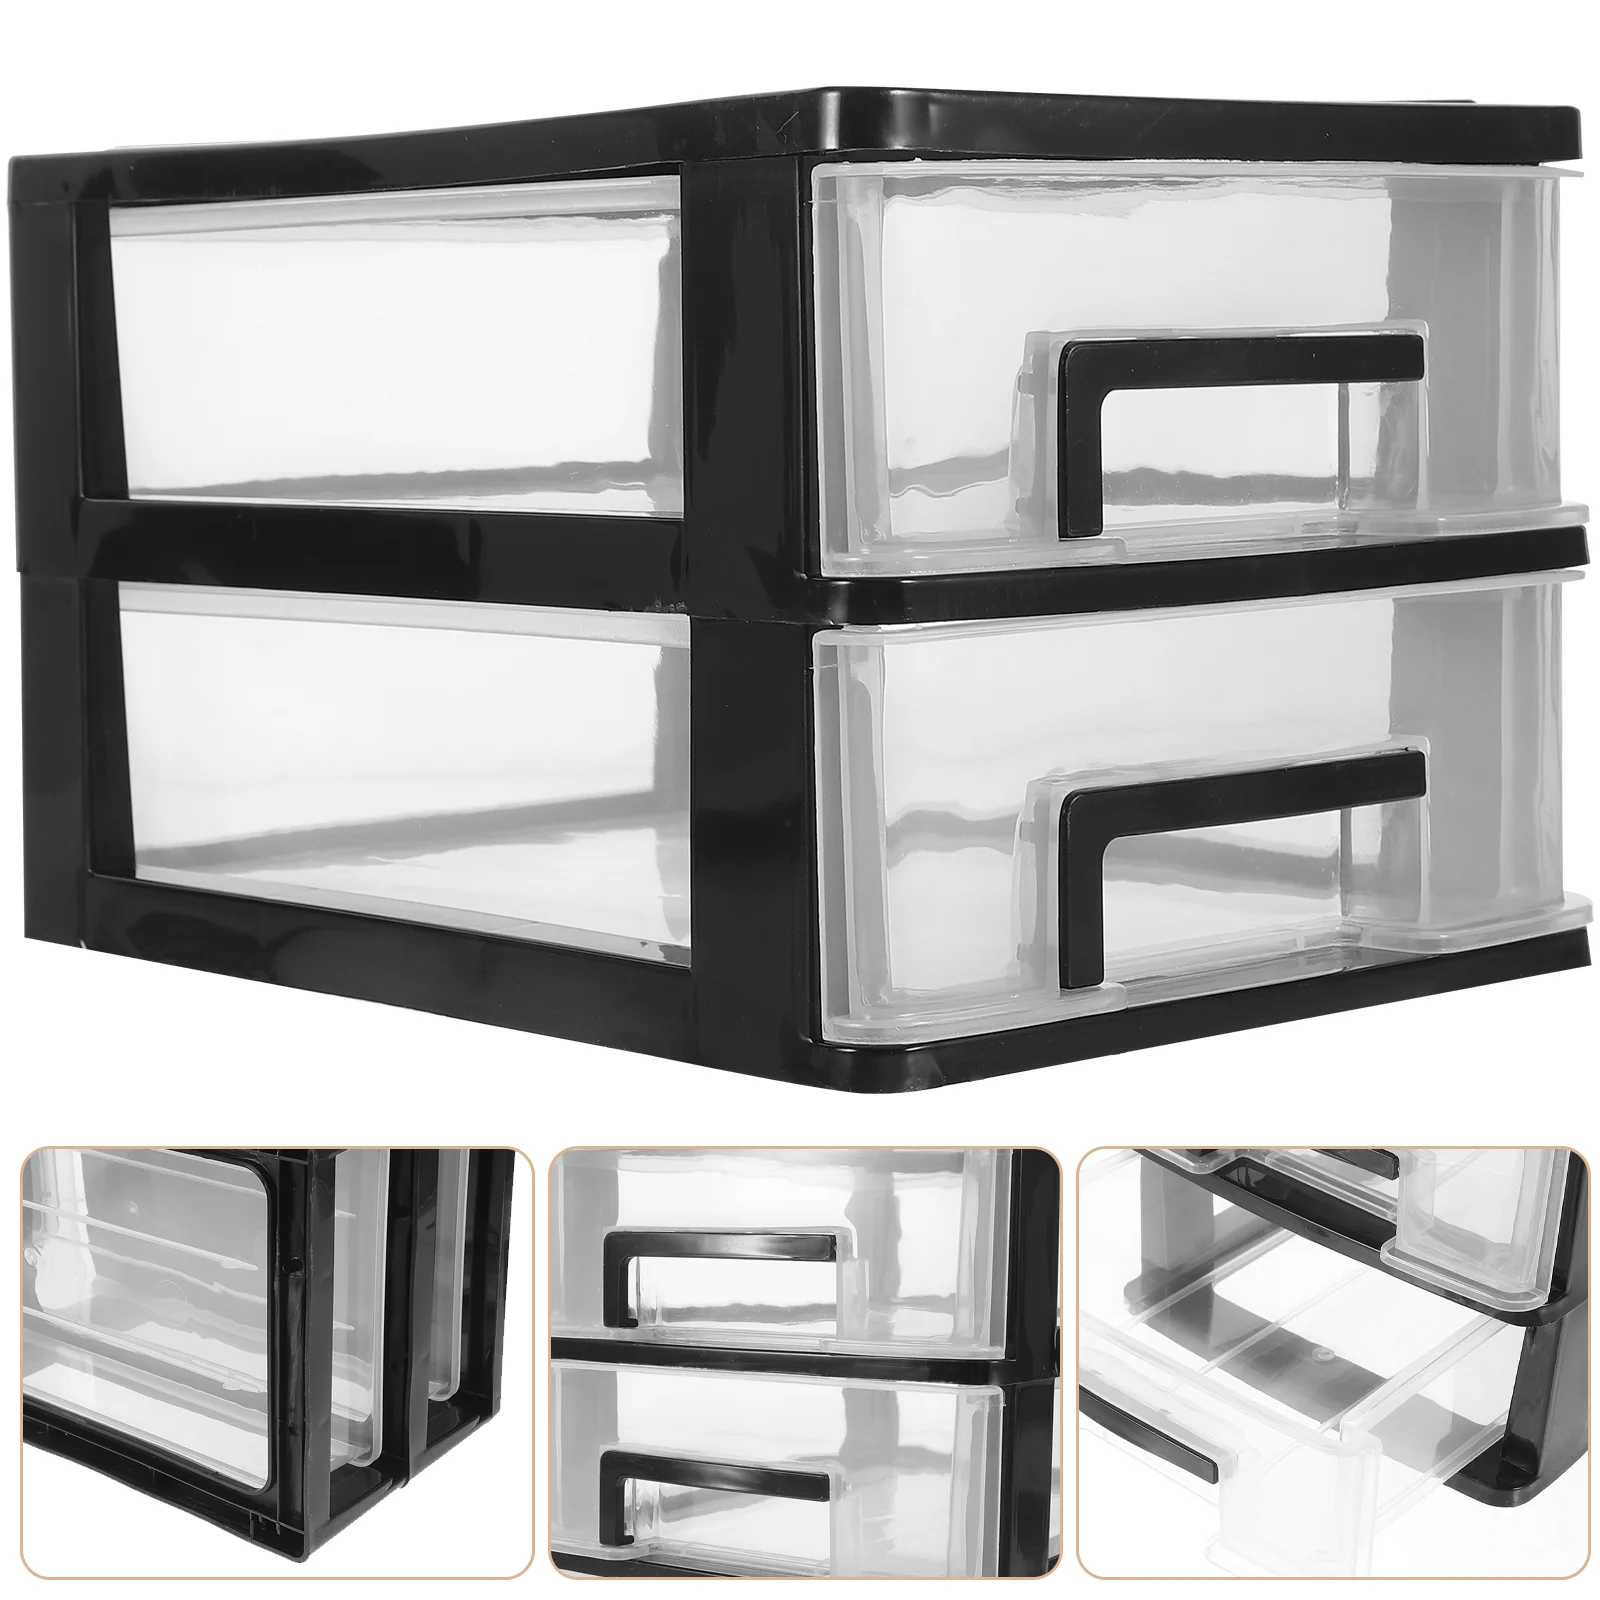 

Plastic Storage Bins Plastic Storage Drawers Clear Desktop Drawer Storage Cabinet Storage Case Storage Box Multilayer